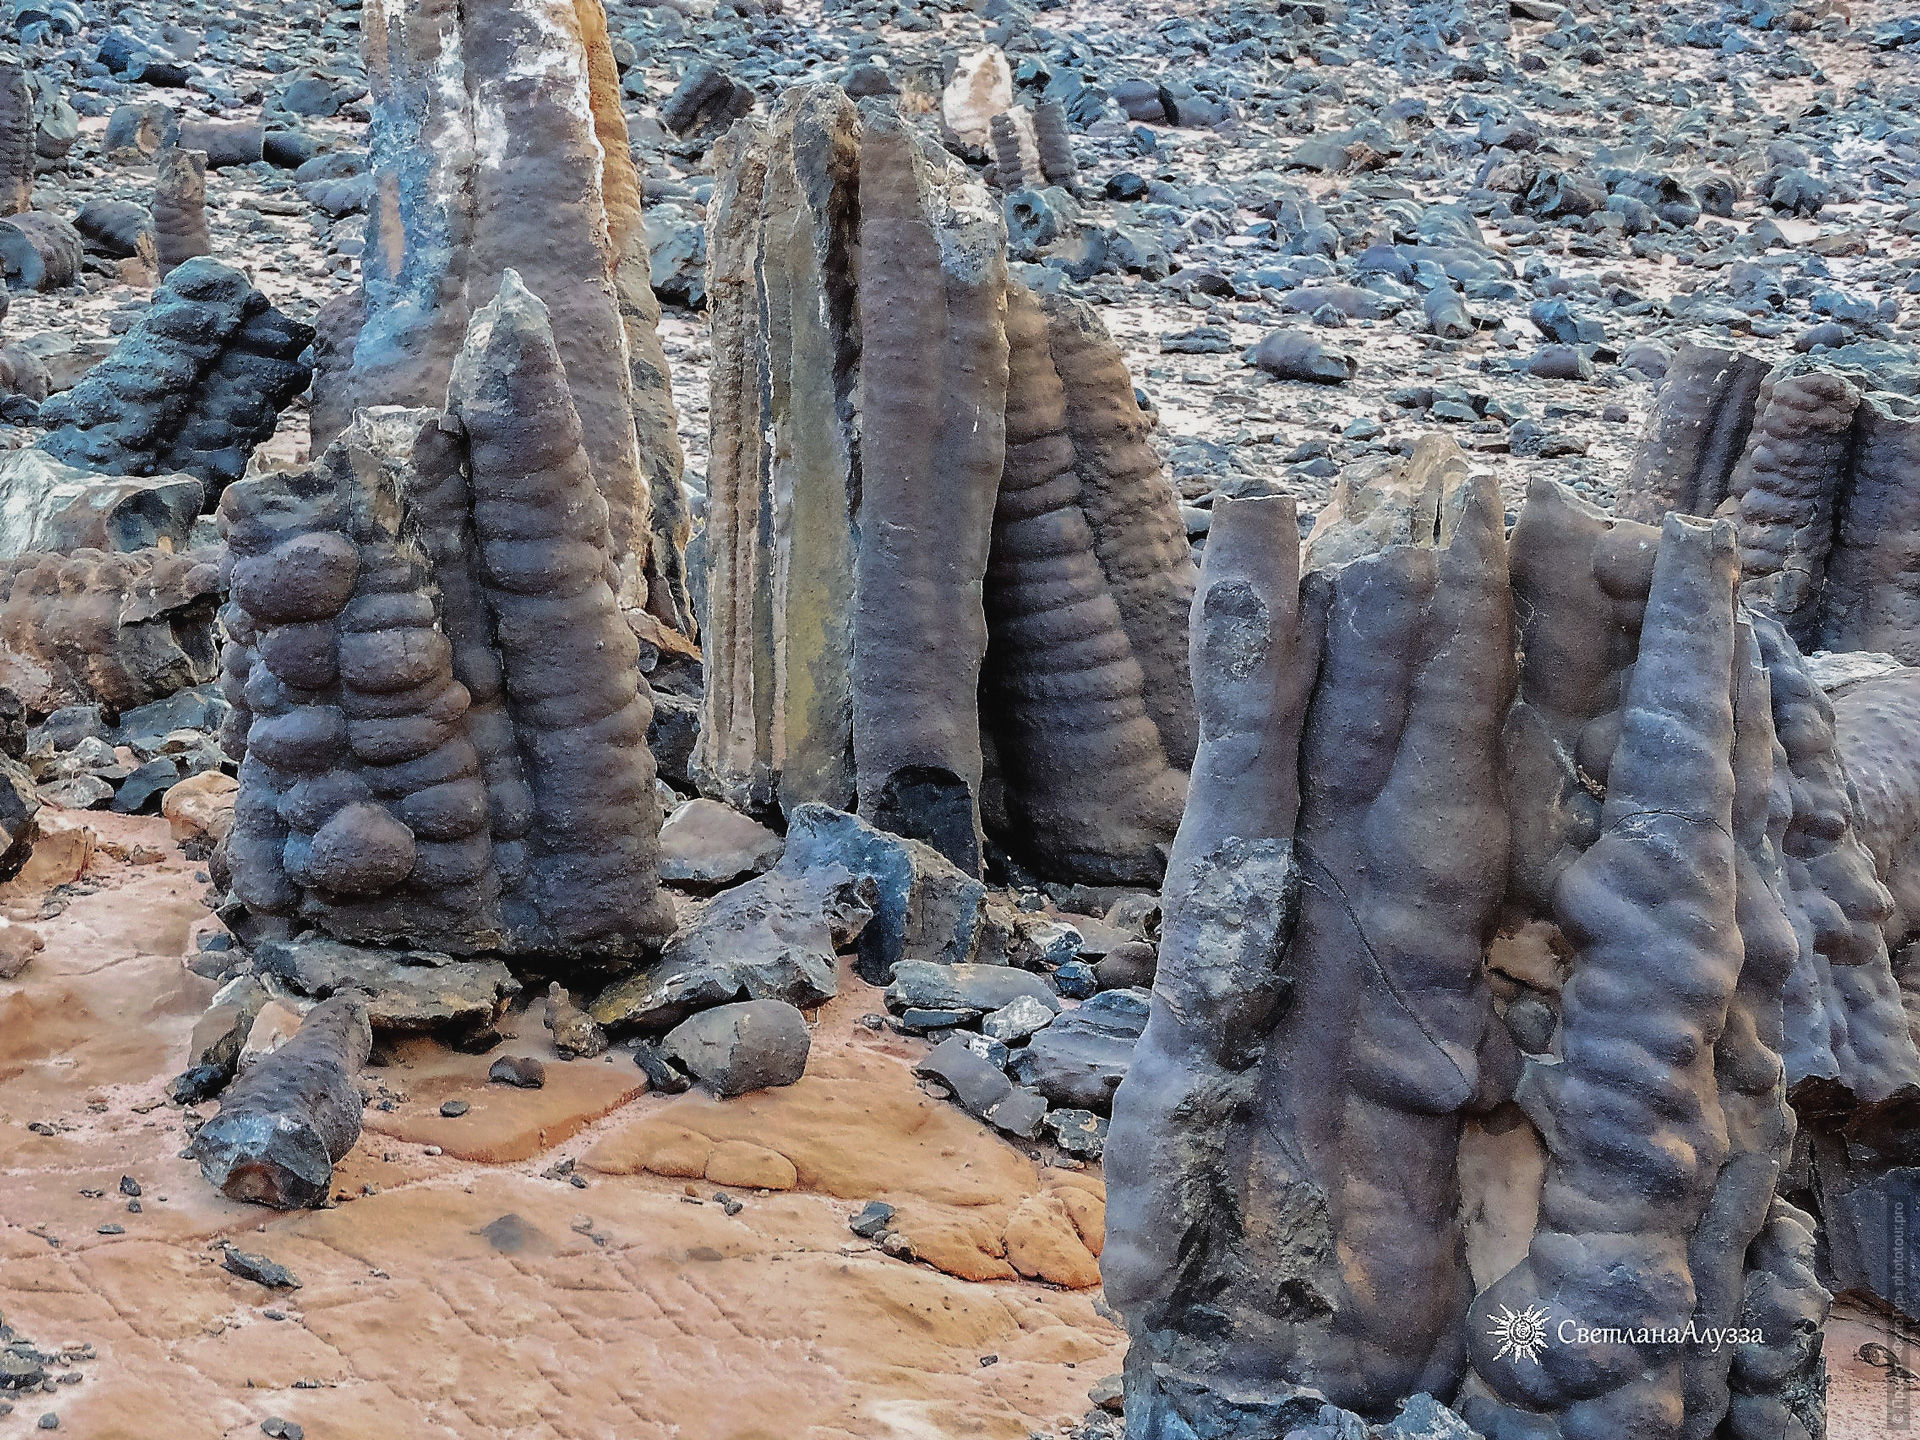 Каменный лес, приключенческий фототур/тур пустыни и горы Синая, Египет, 27 ноября - 8 декабря 2021 года.